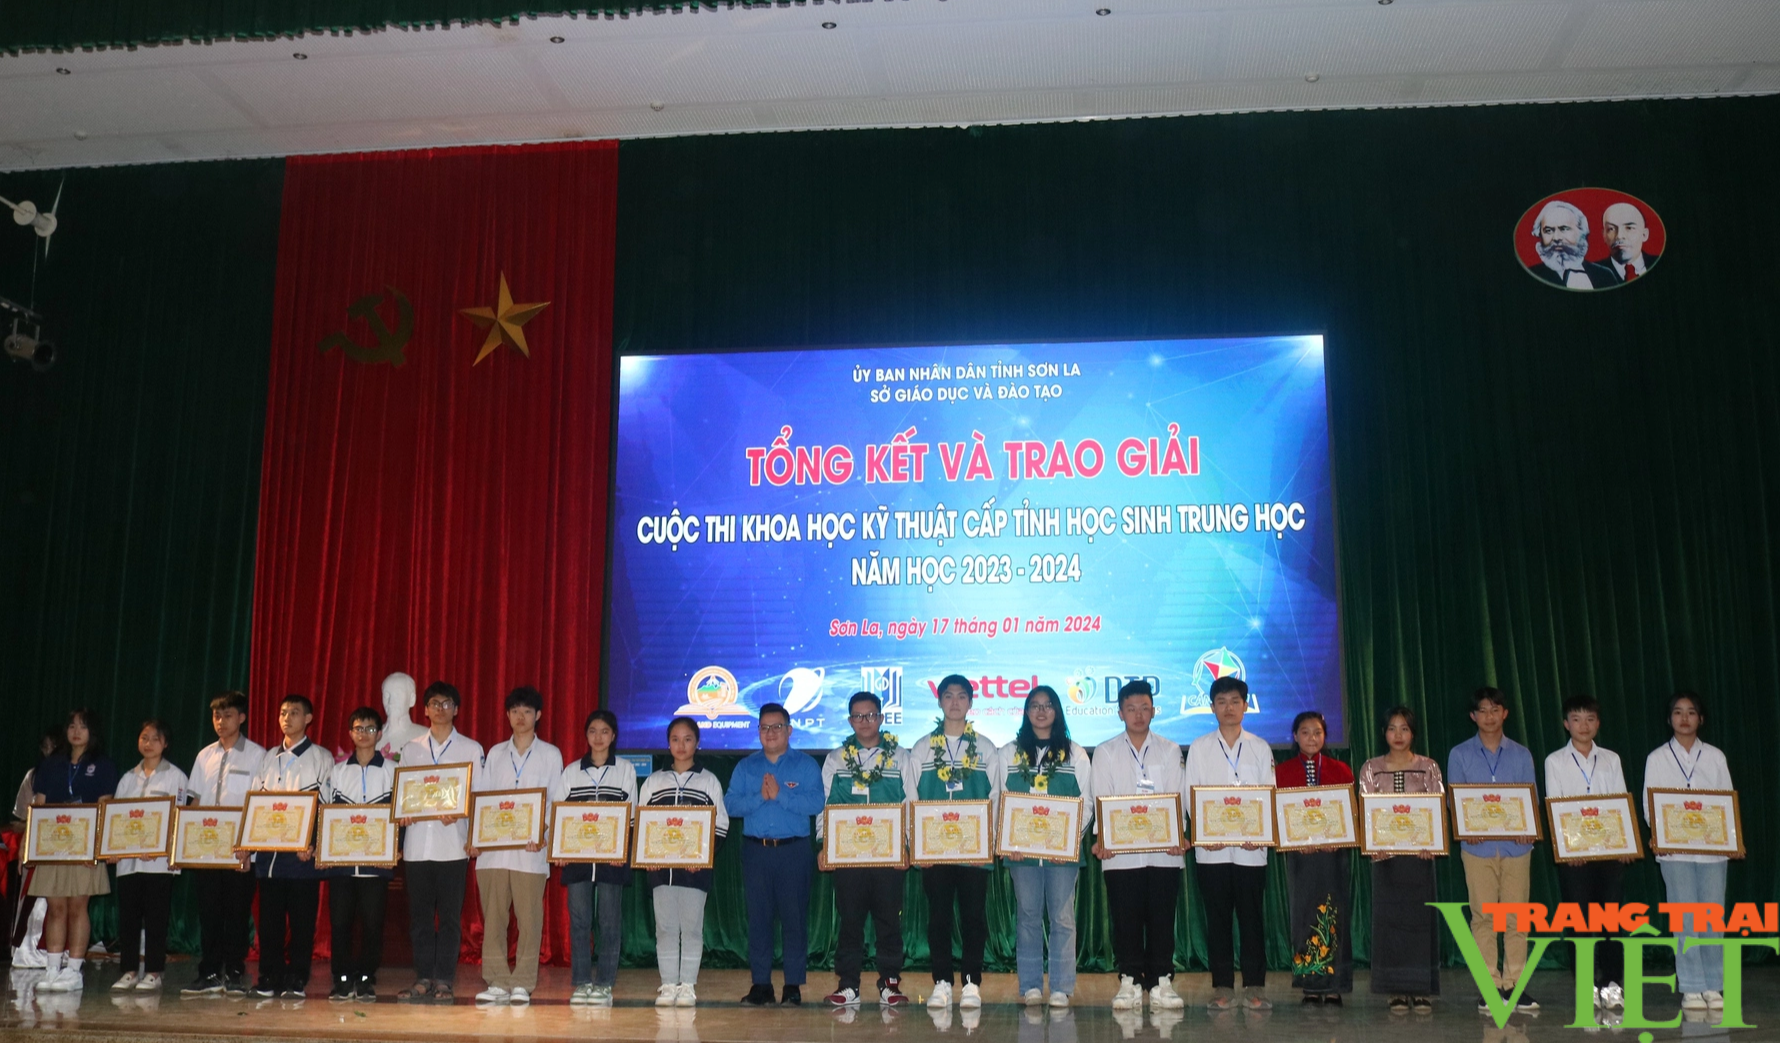 Sơn La: Hơn 90 dự án đạt giải tại cuộc thi khoa học kỹ thuật dành cho học sinh trung học- Ảnh 7.